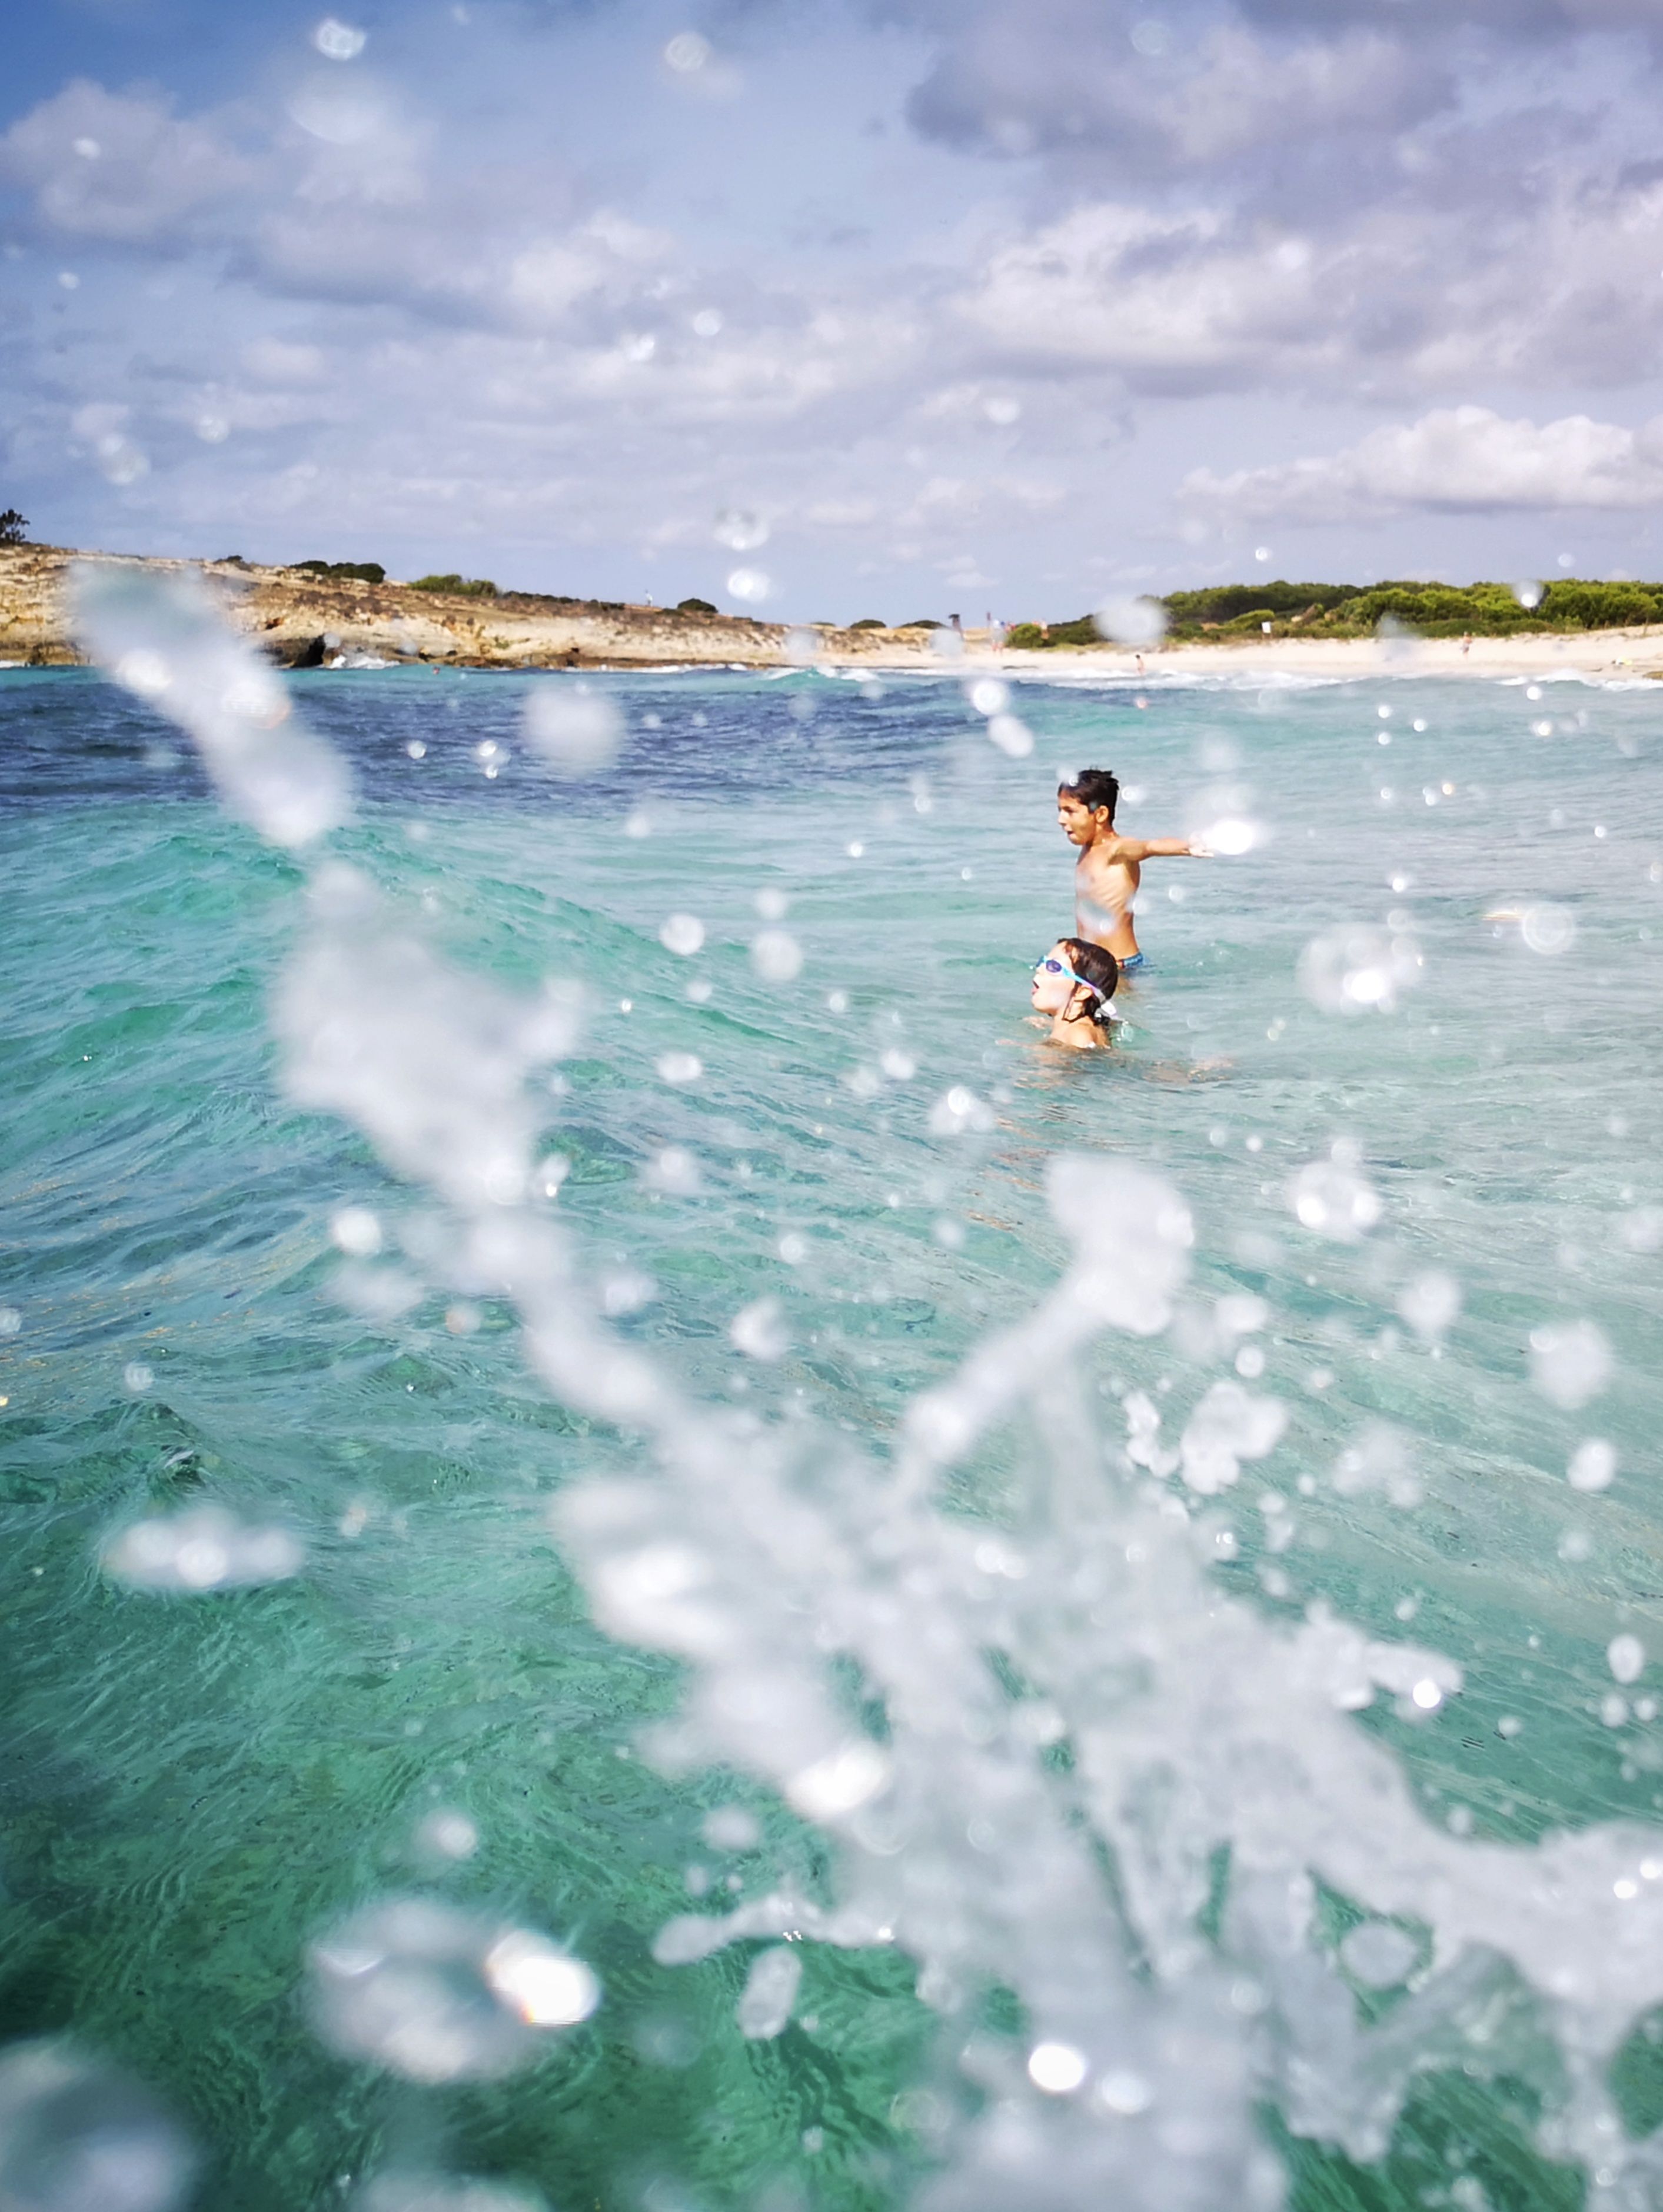 9è Premi WEB. Gaudint de les onades. Cala Talis, Menorca. FOTO:  Josep Gornés